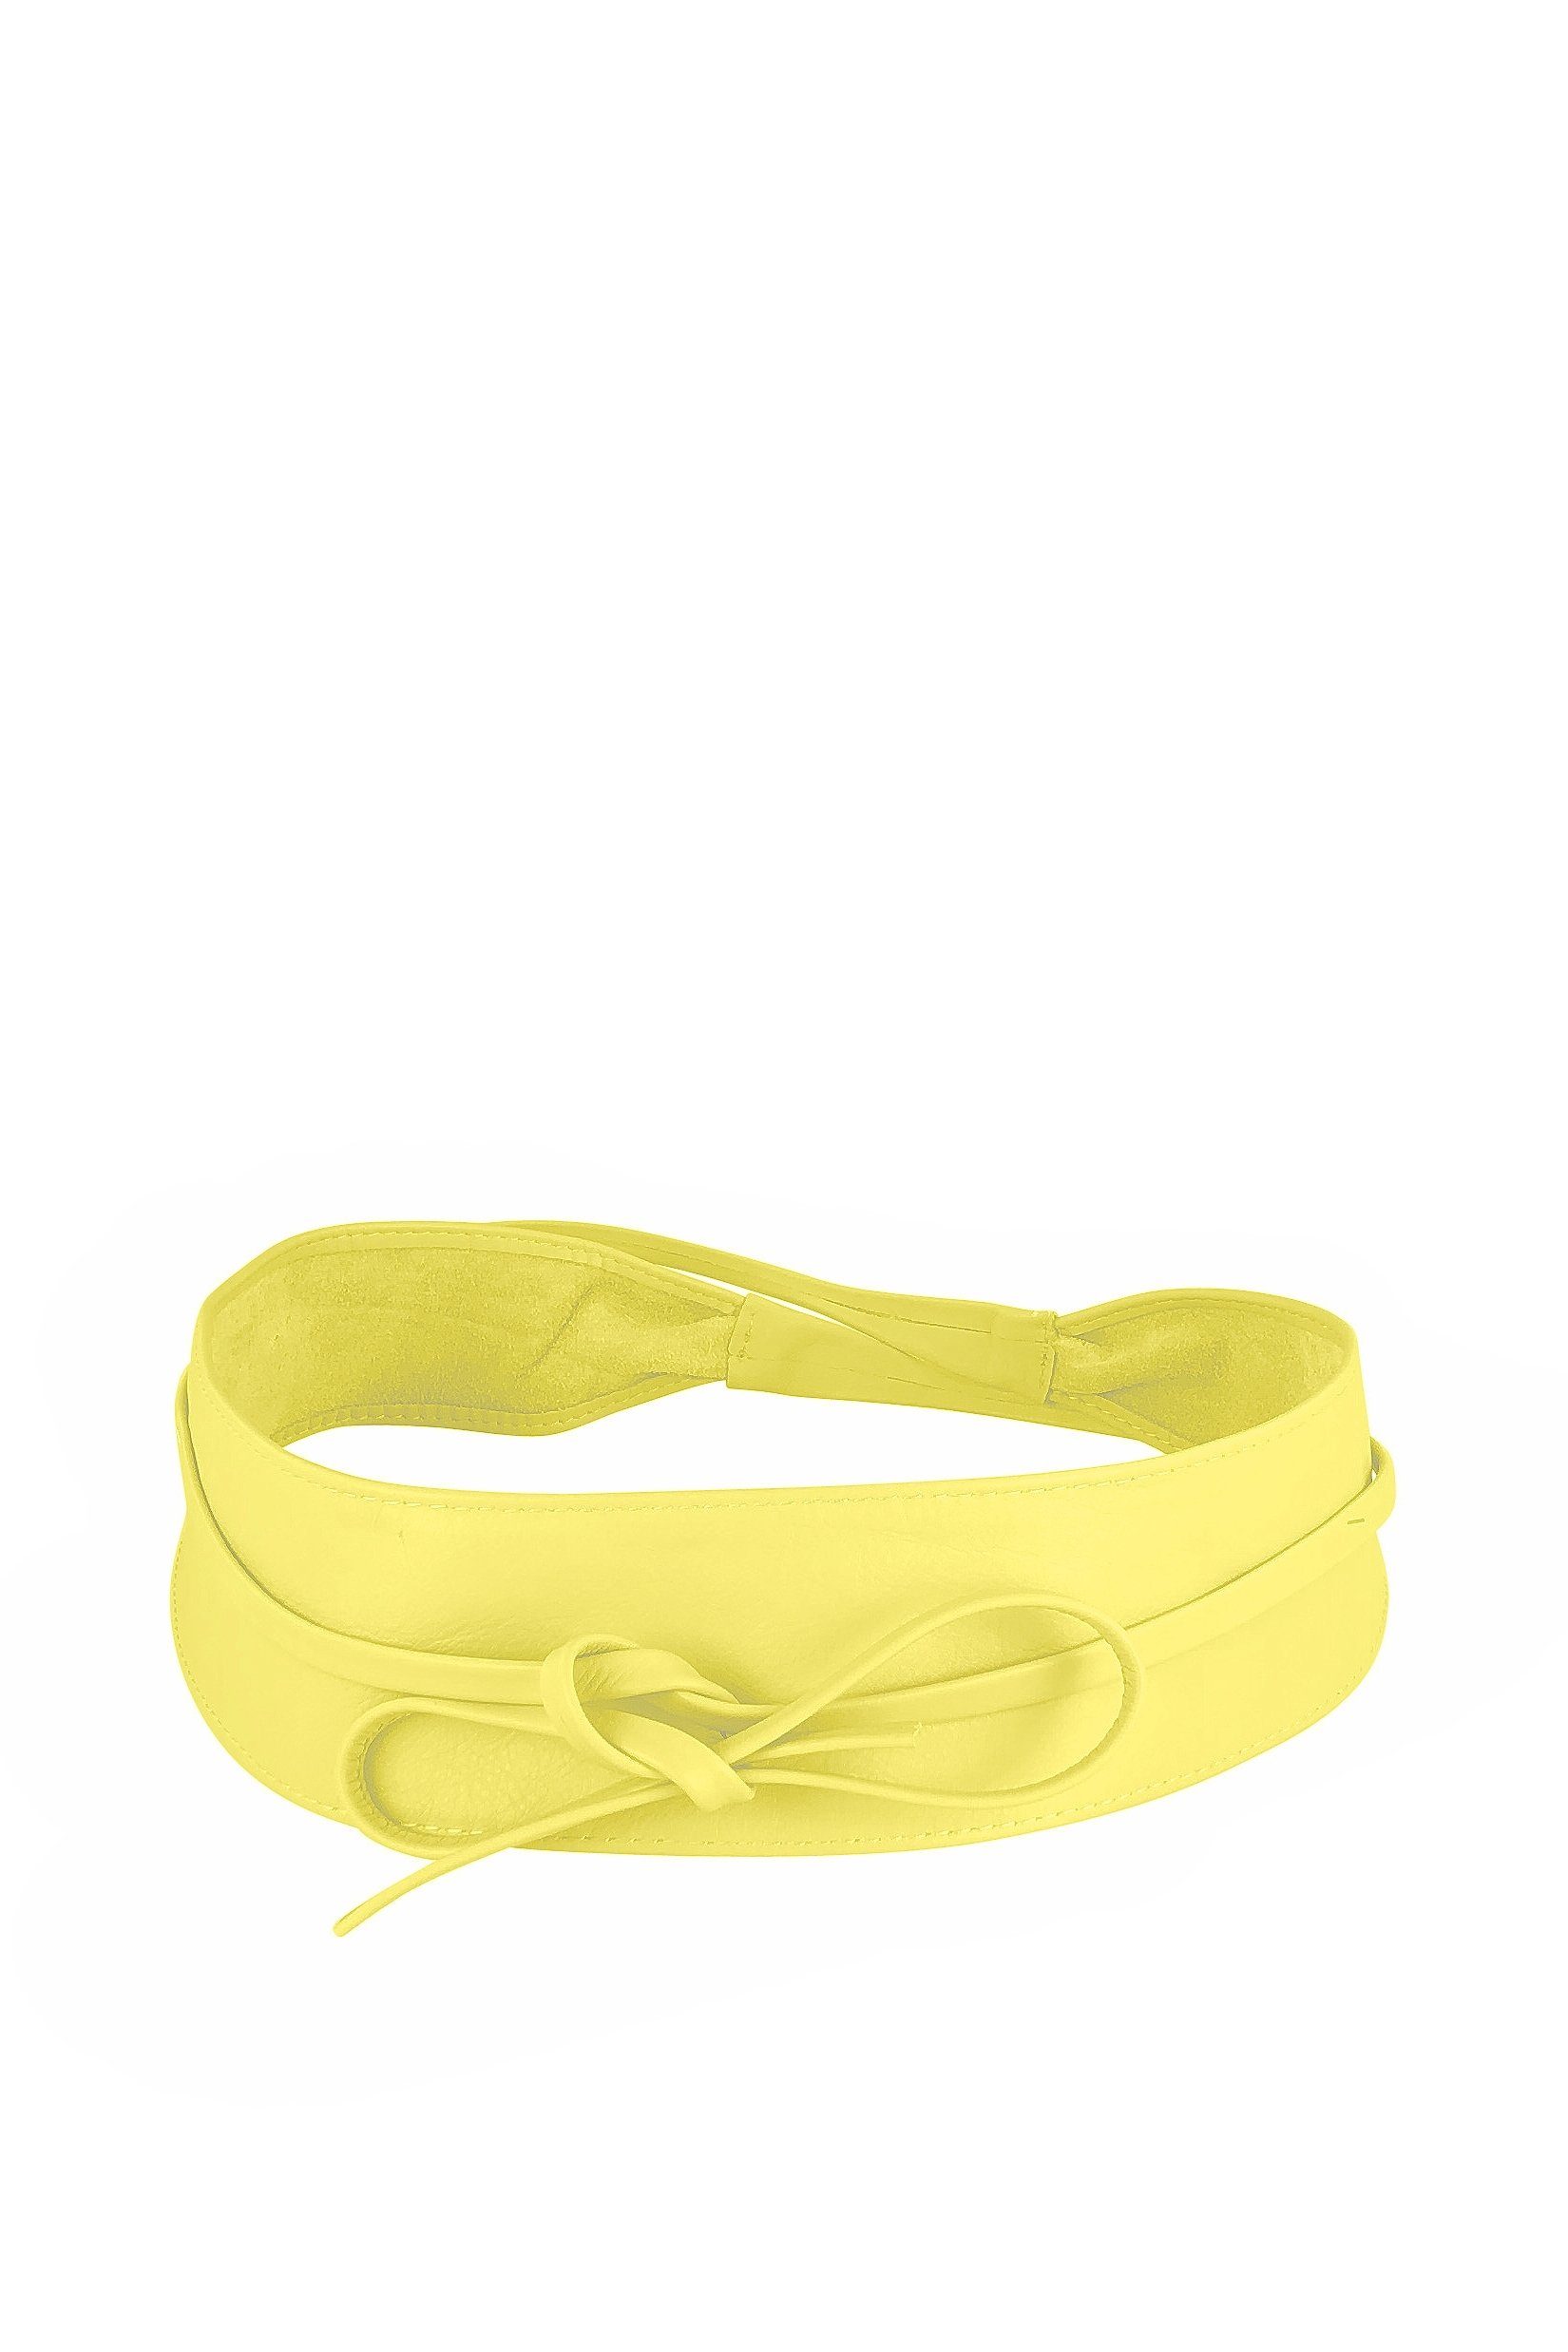 COLLEZIONE ALESSANDRO Taillengürtel Summertime aus weichem Material zum Binden gelb